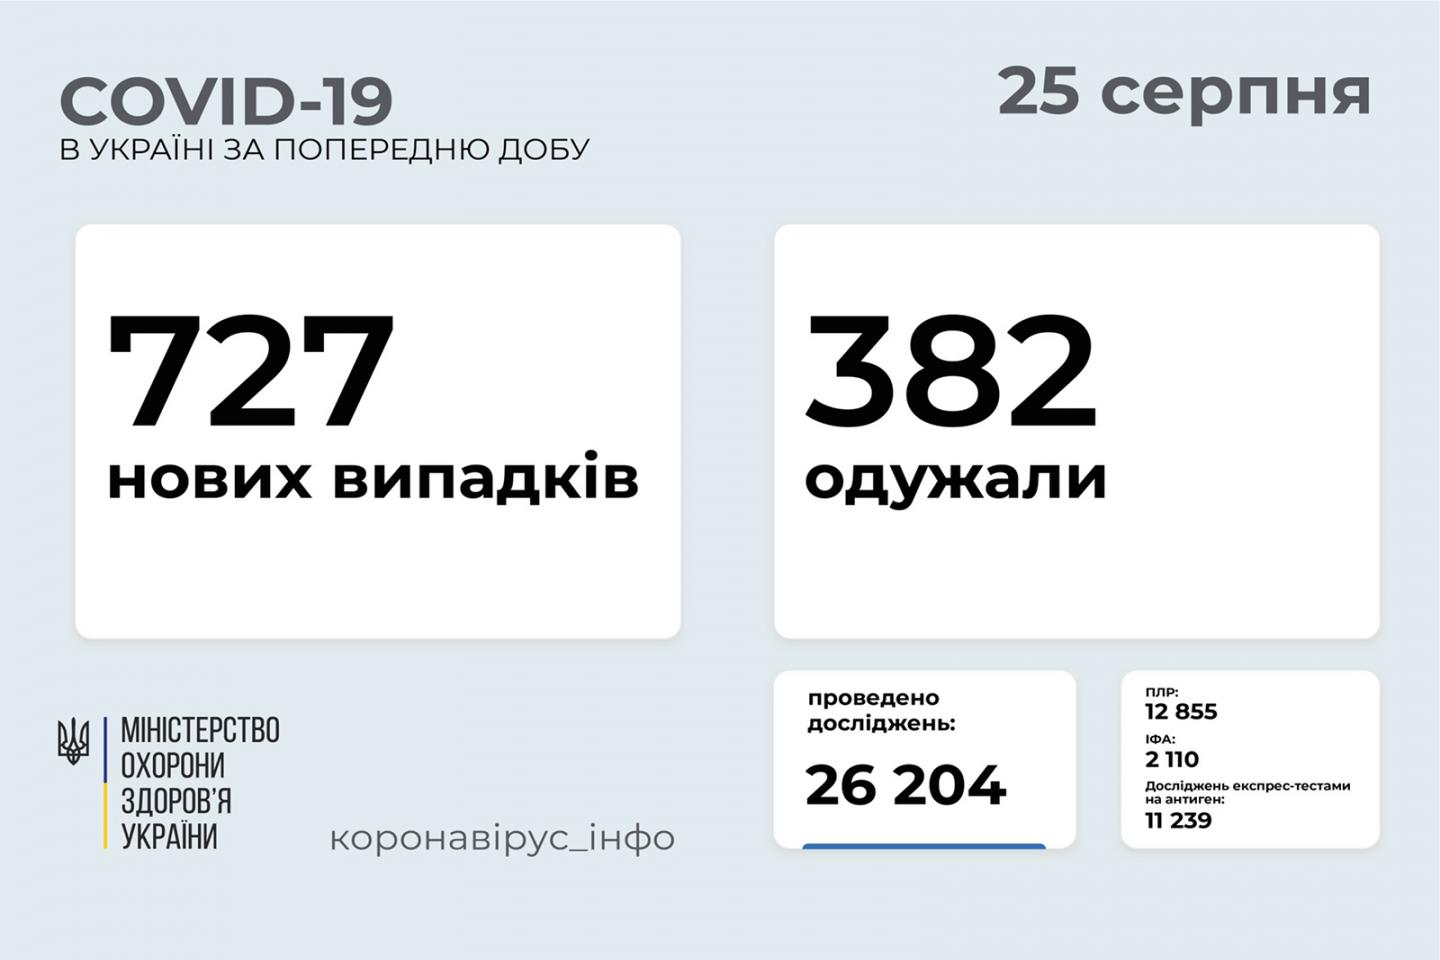 http://dunrada.gov.ua/uploadfile/archive_news/2021/08/25/2021-08-25_2202/images/images-52570.jpg